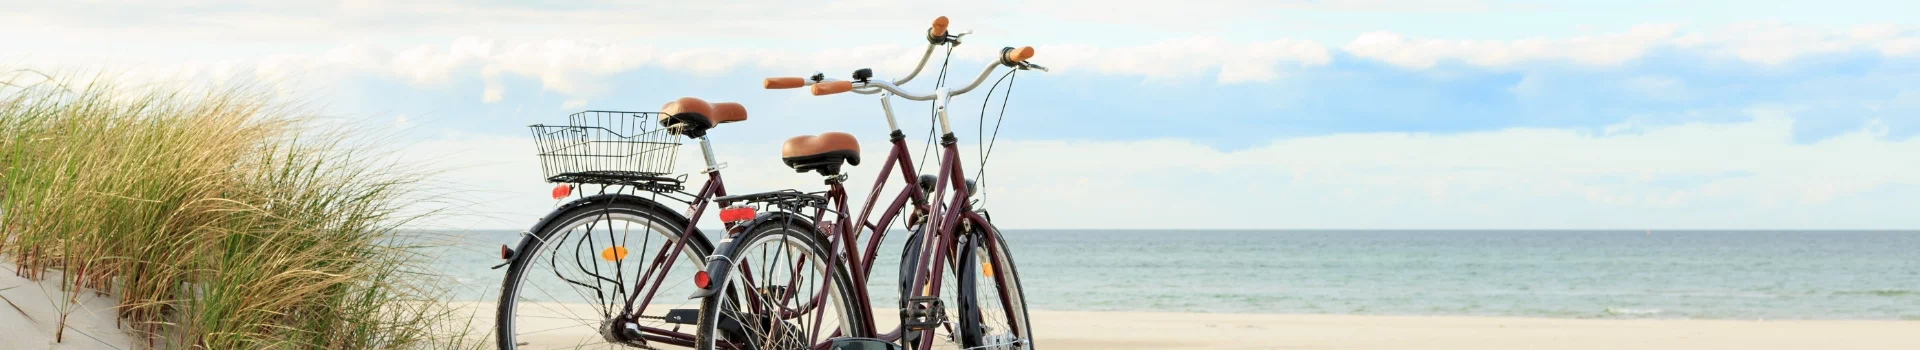 rowery na plaży